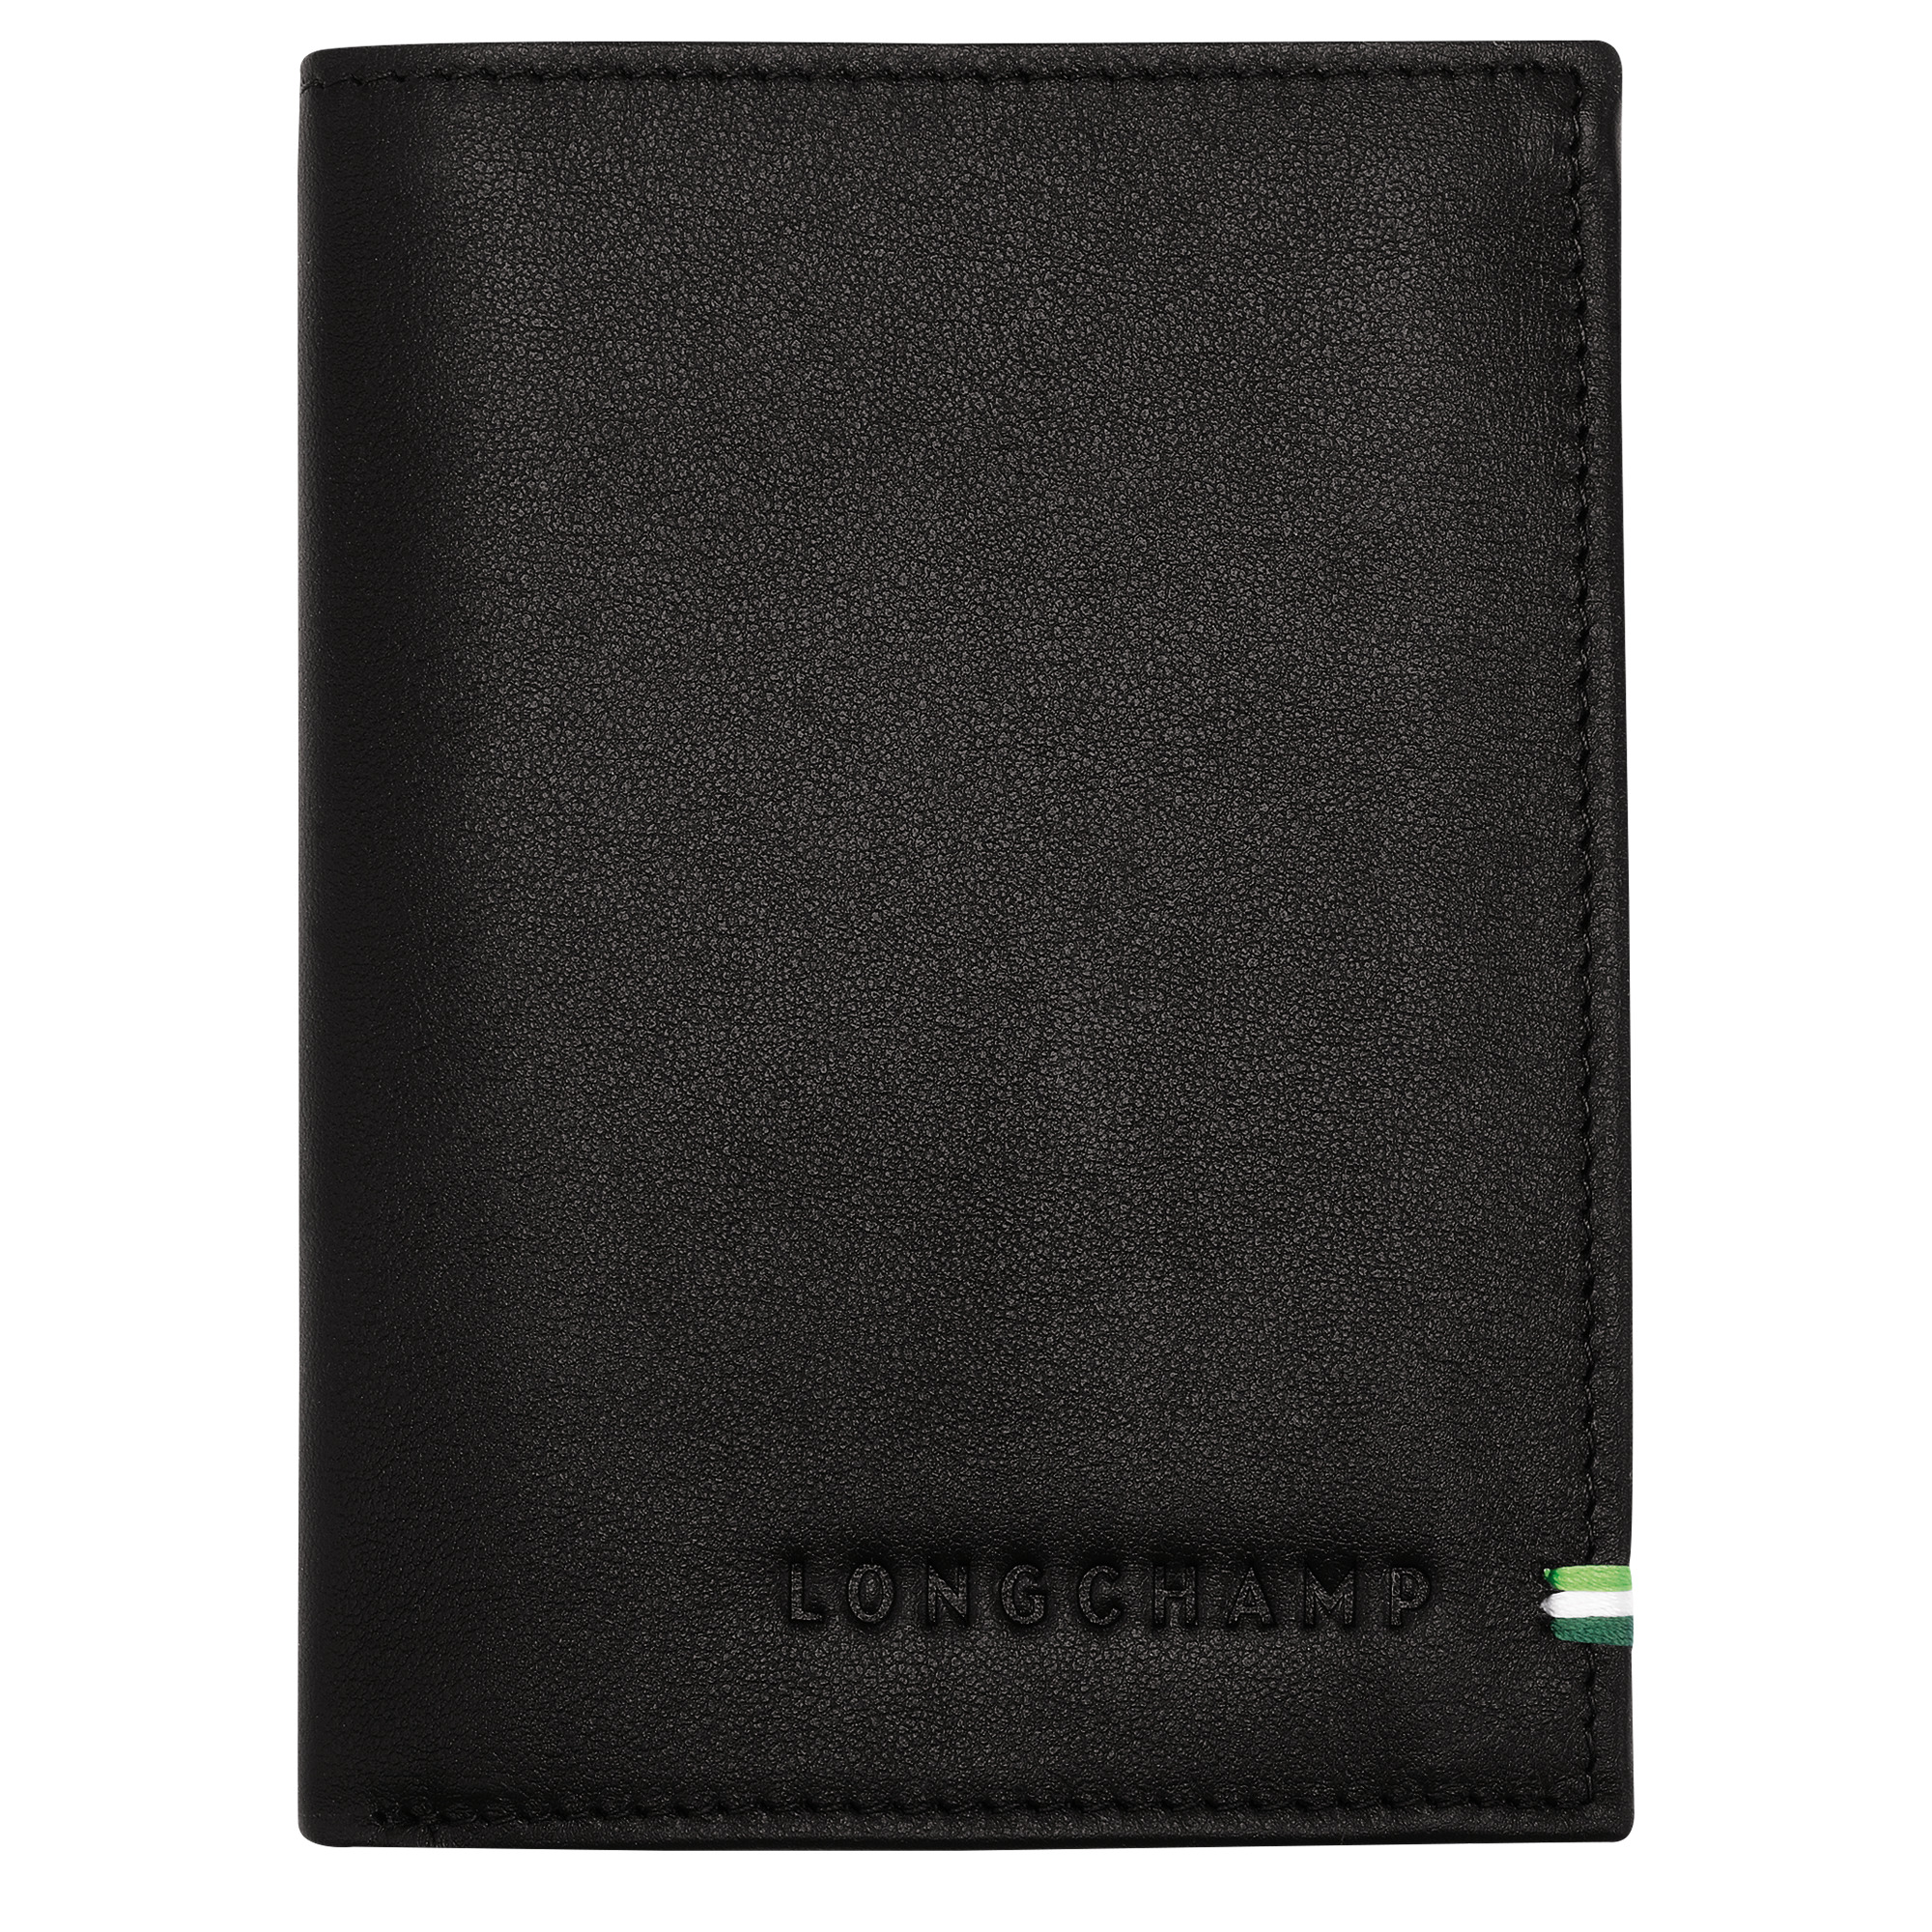 Longchamp sur Seine Wallet Black - Leather - 1